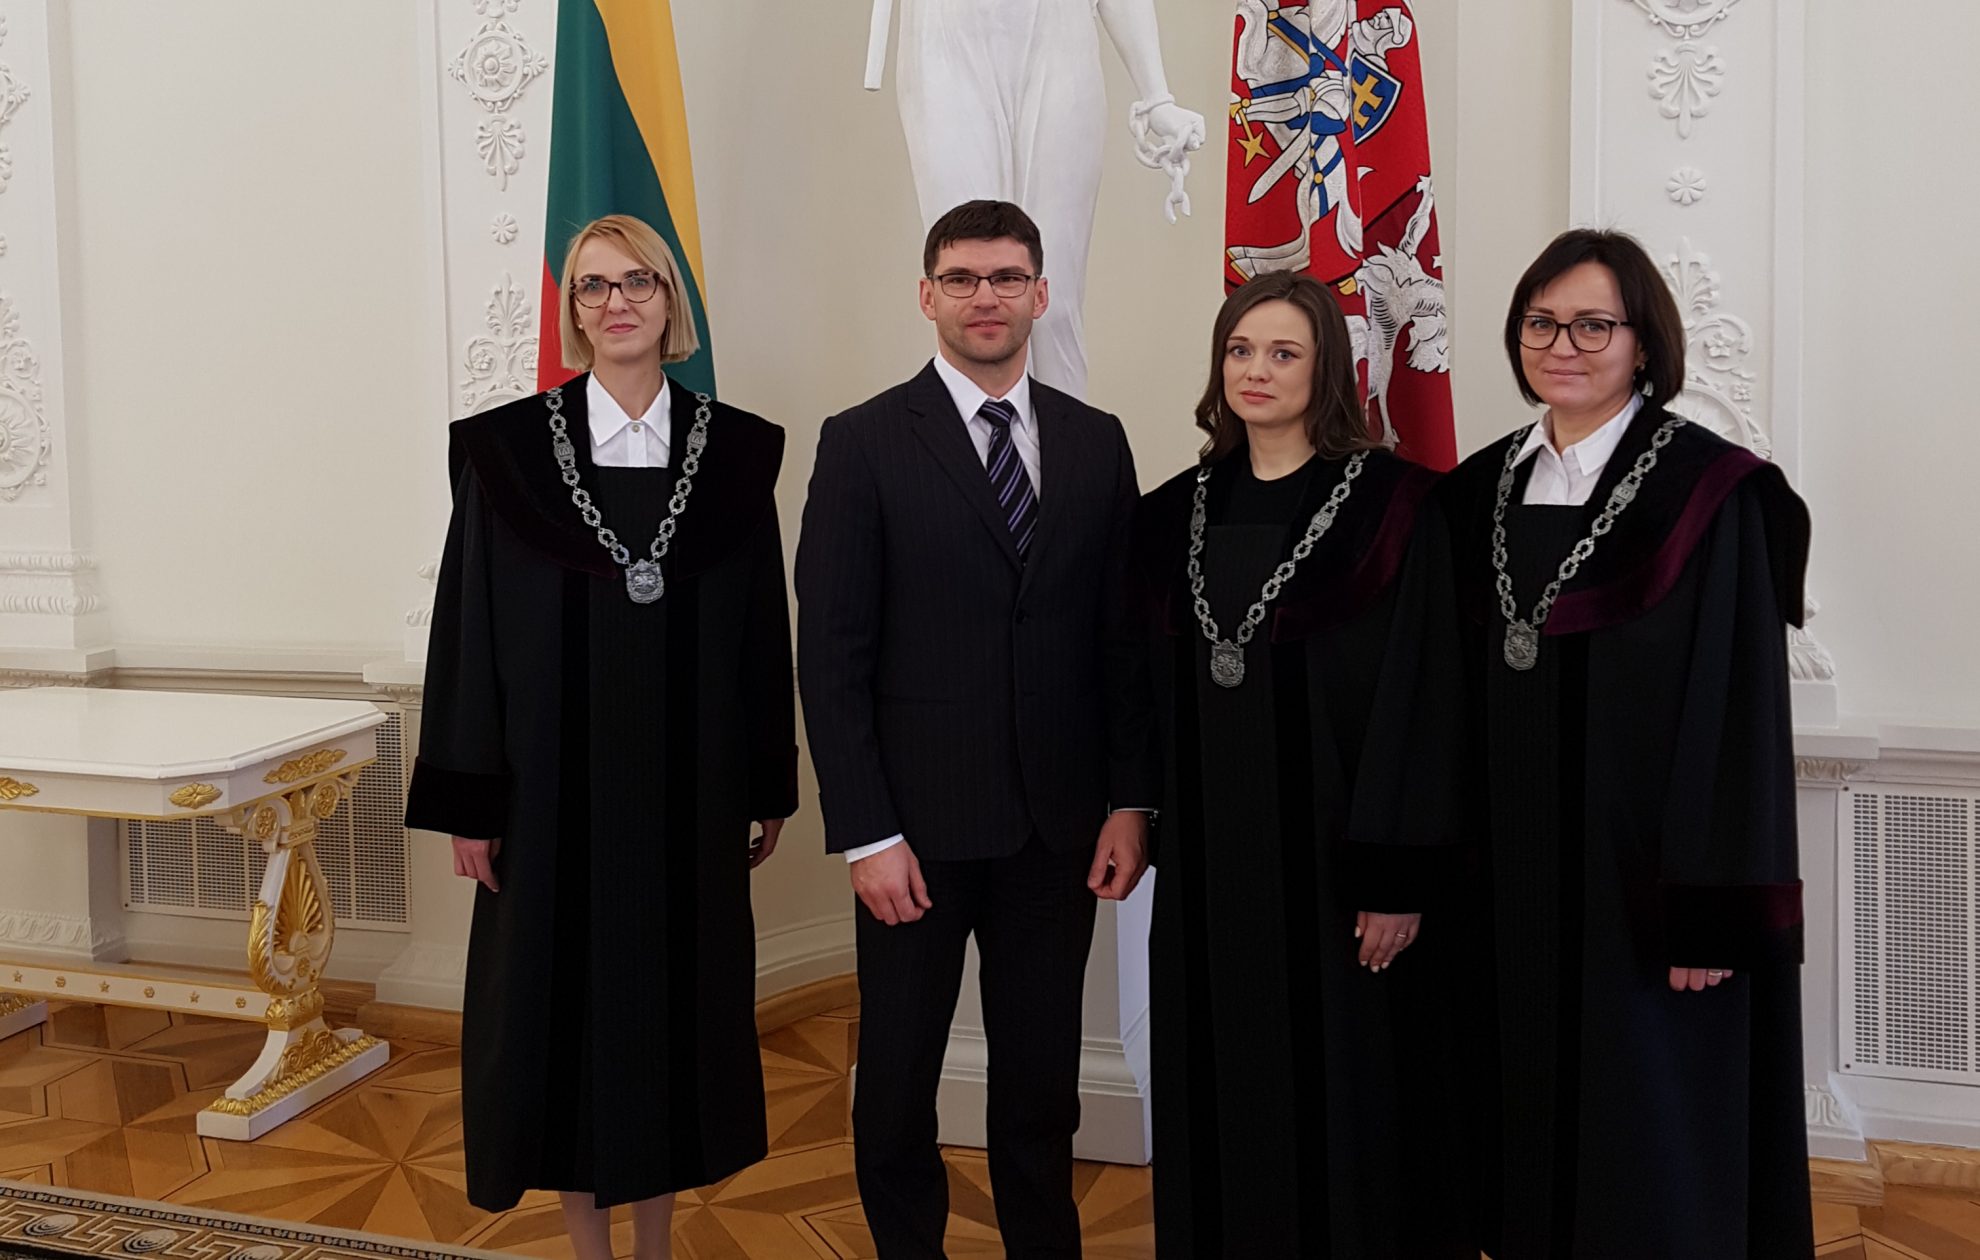 Šiandien Prezidentei priesaiką davė keturiolika naujų teisėjų, trys iš jų dirbs Panevėžio apylinkės teisme.